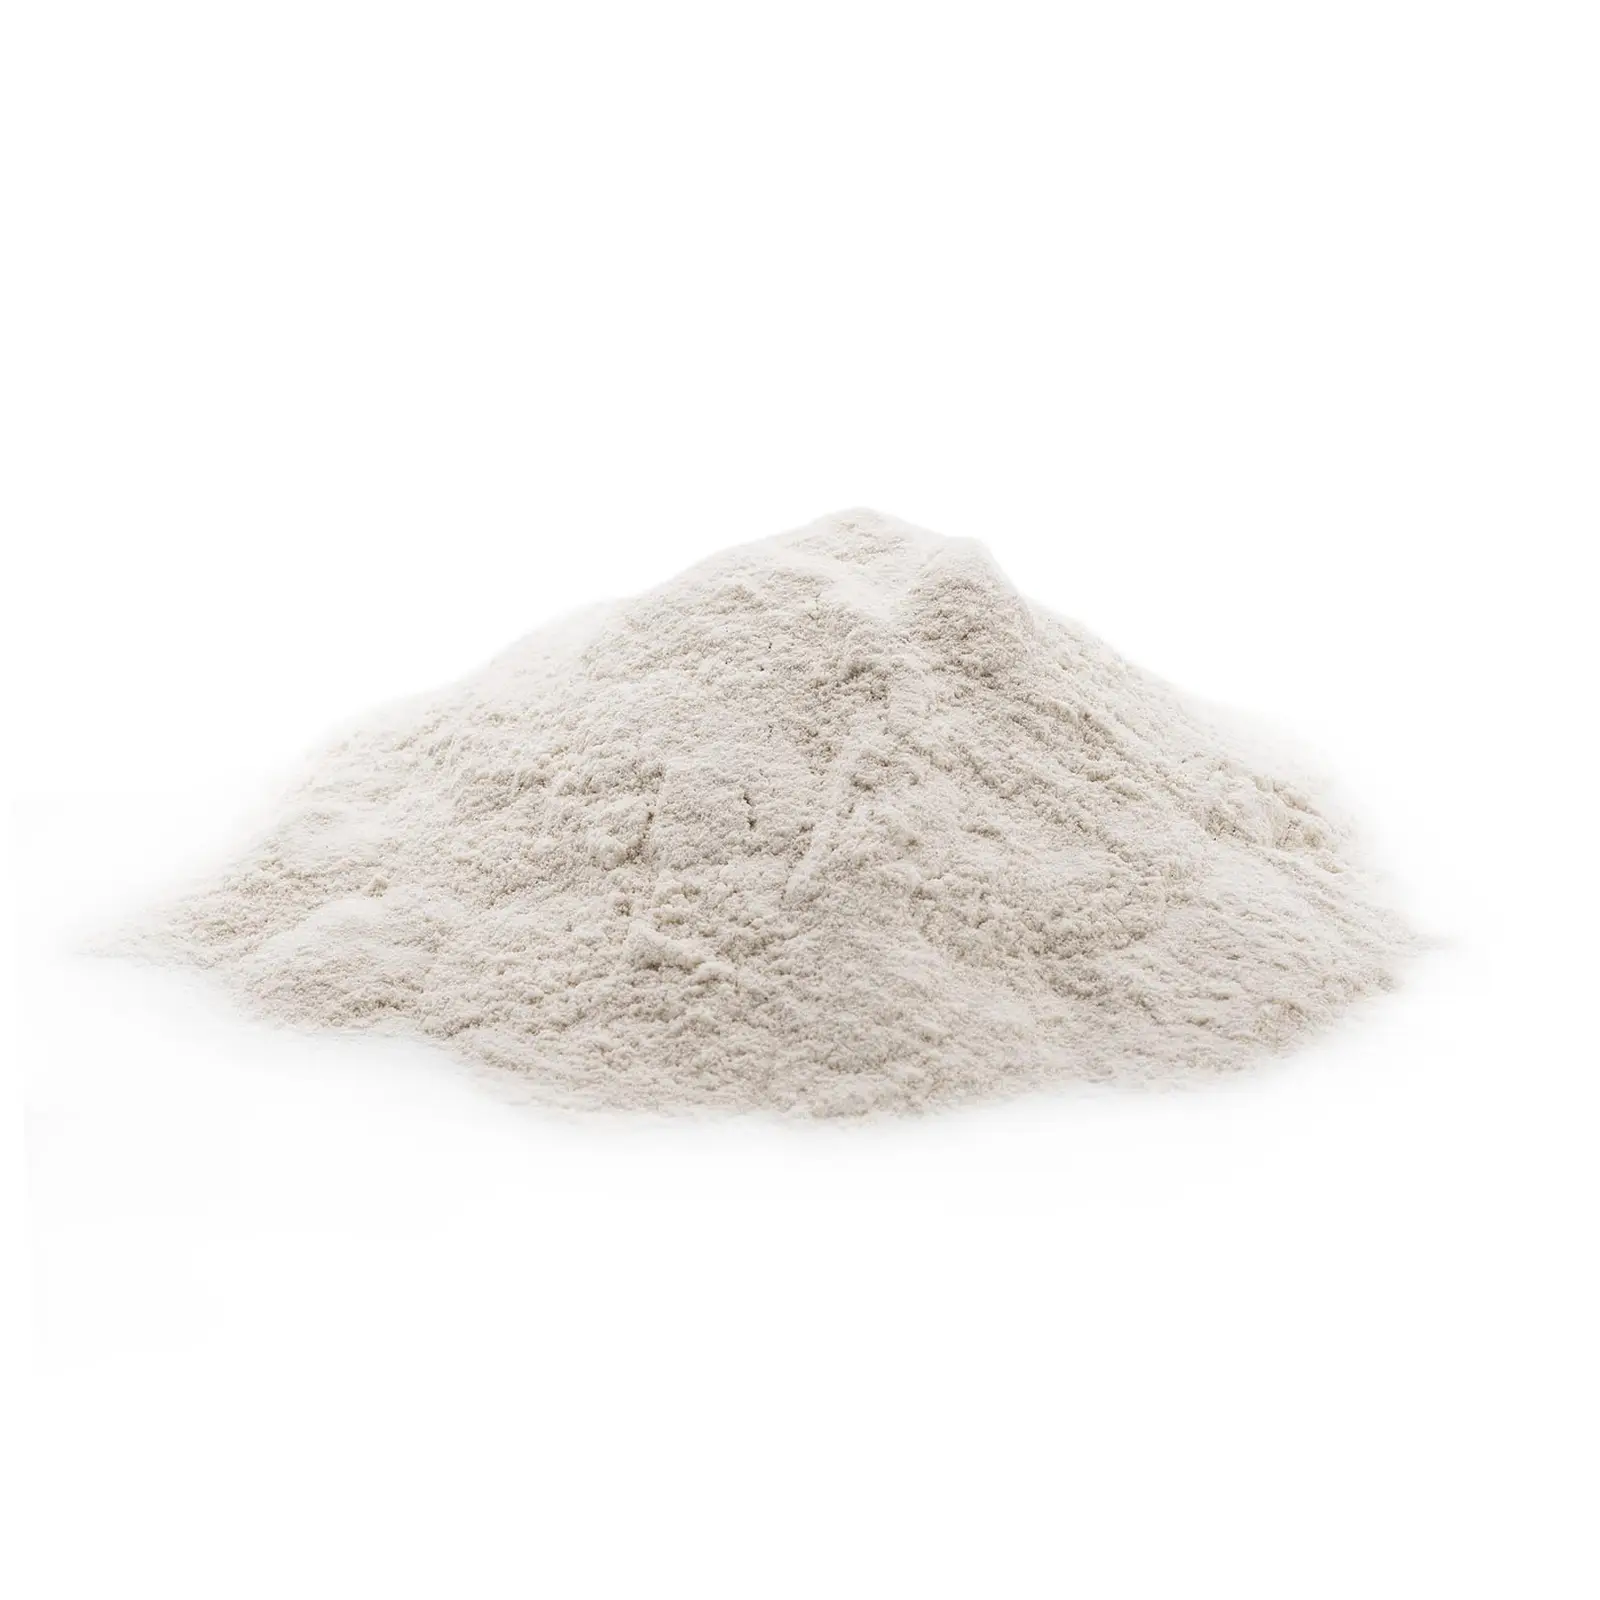 Bindemittel für Pellets - 20 kg - Weizenstärke - 5,5 - 7,5 pH